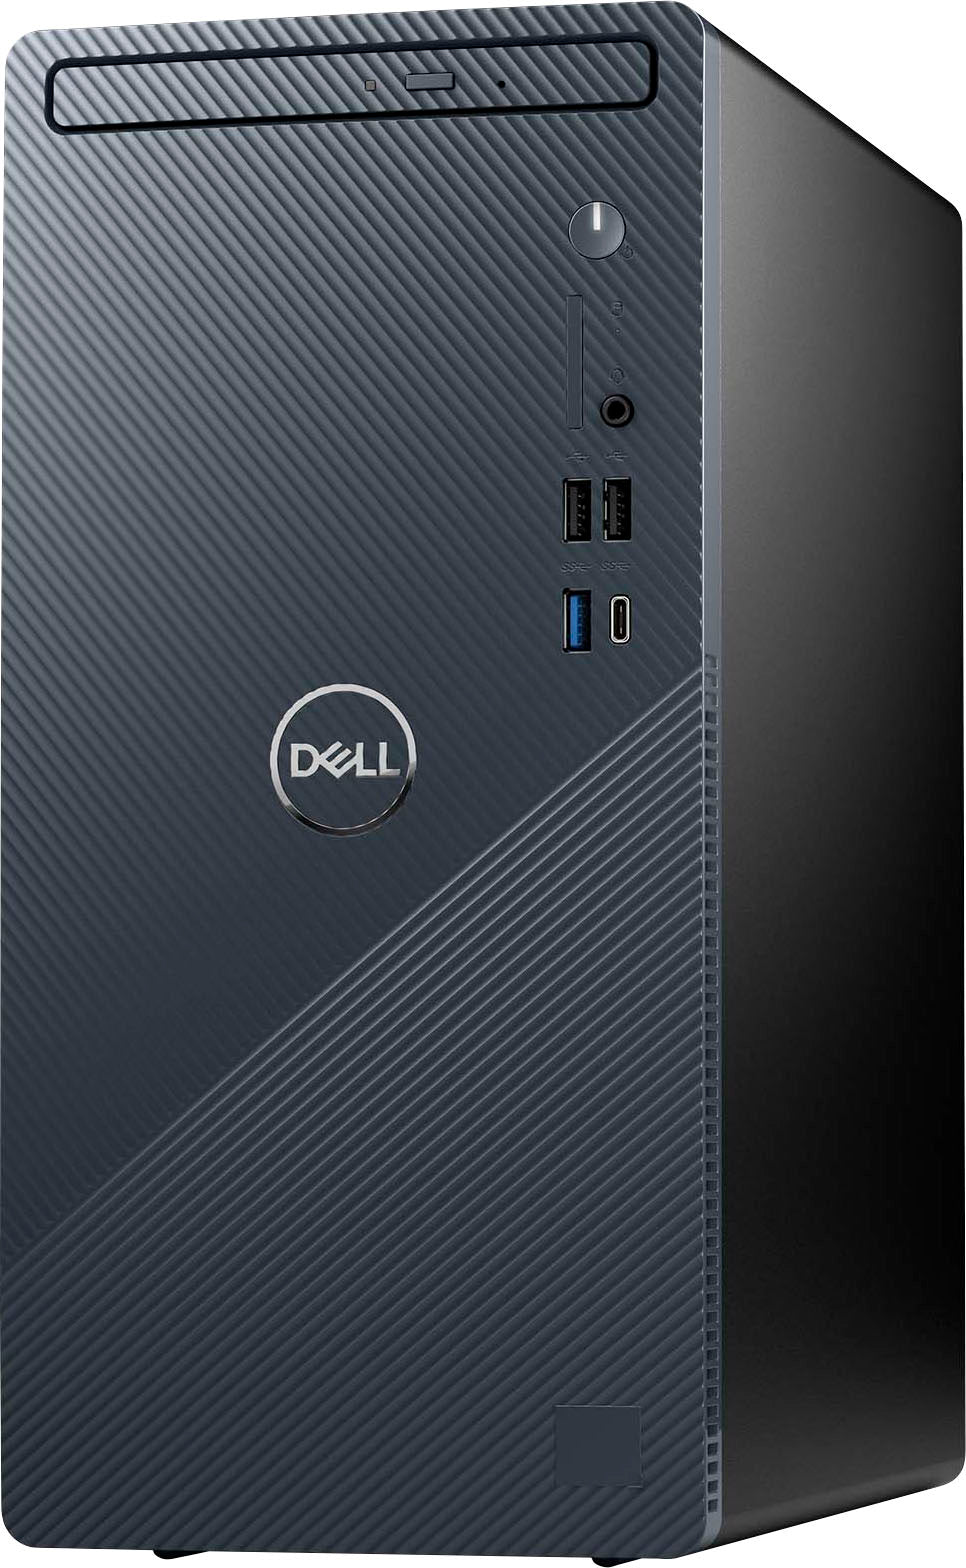 Dell - Dell- Inspiron Desktop (3030) - Intel Core i5 processor (14 gen) - 8GB Memory - 512GB SSD - Mist Blue_1